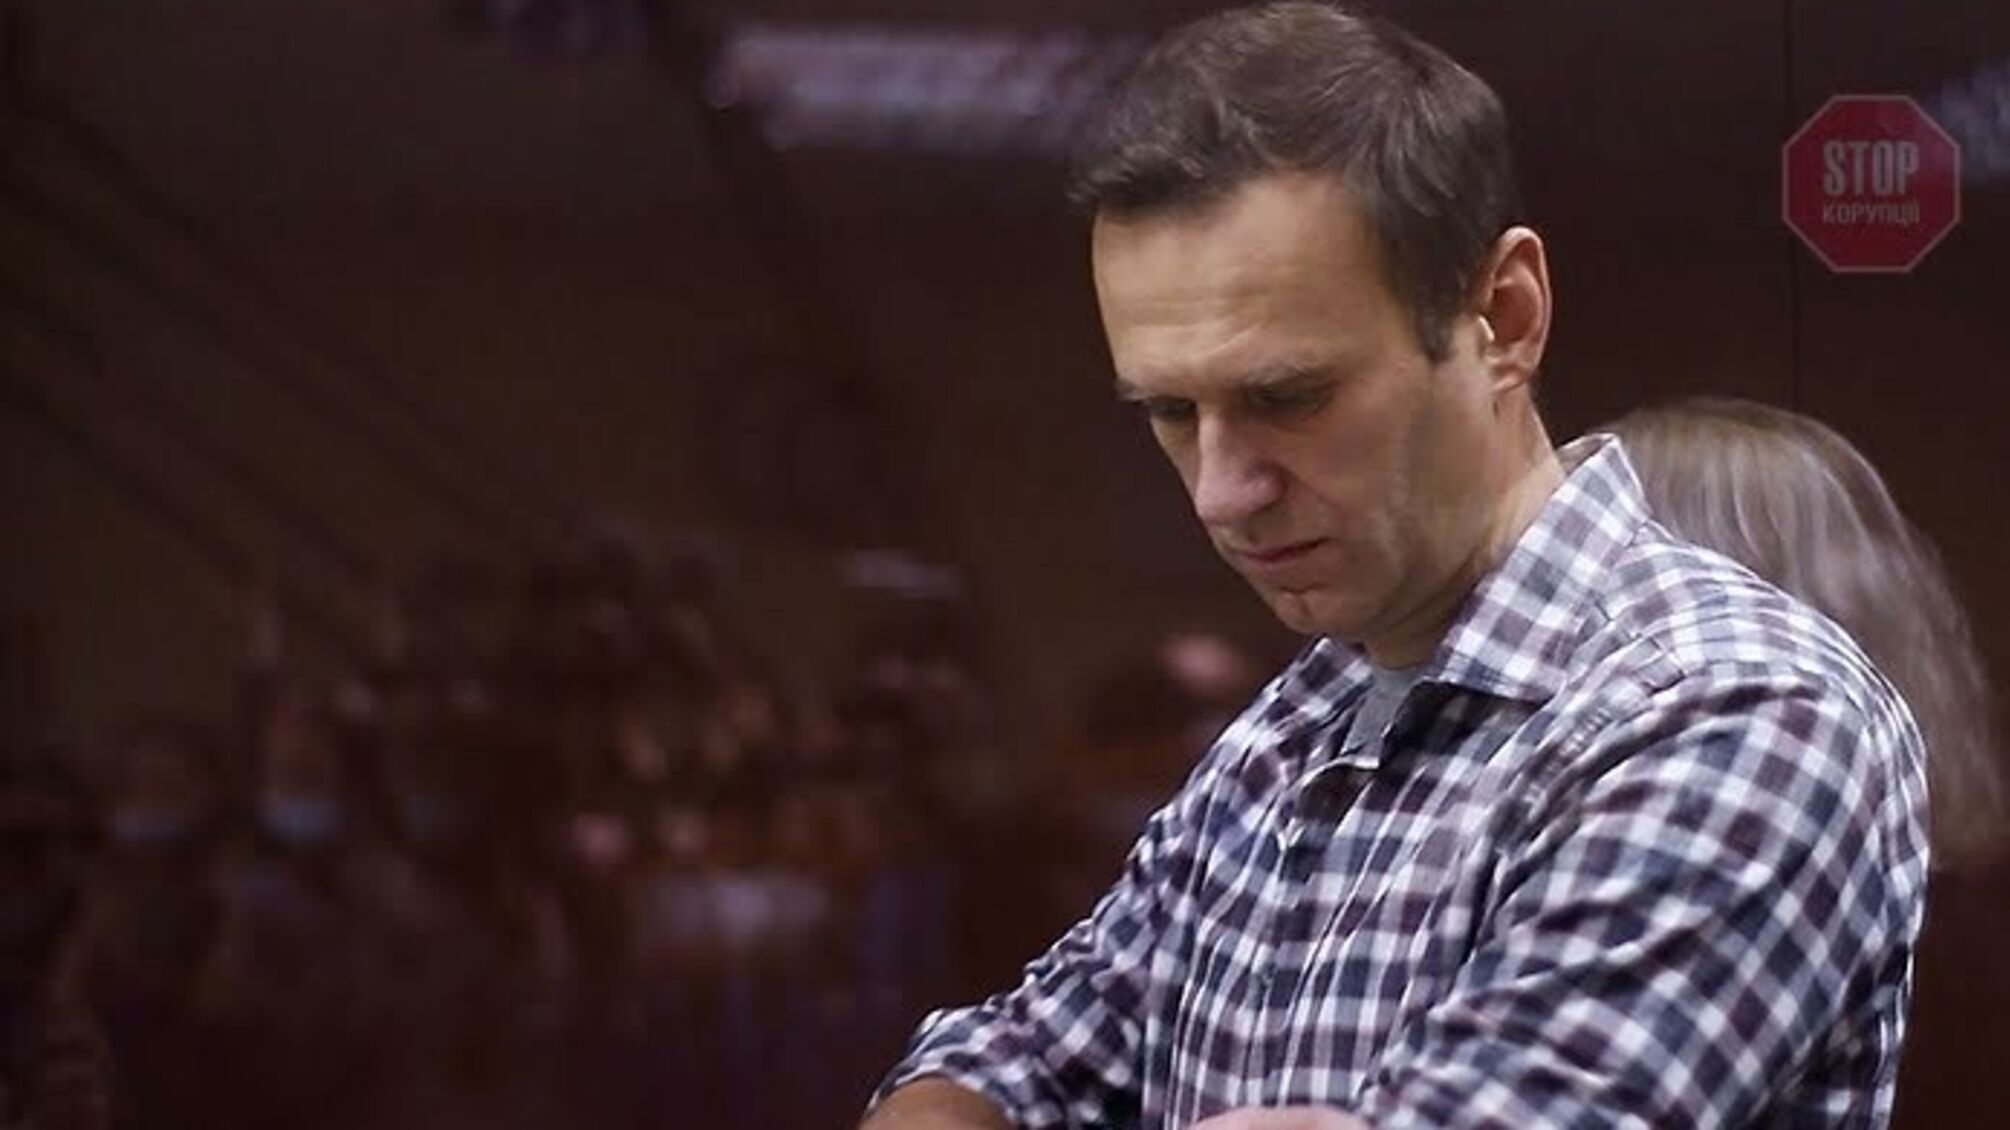 'Наш пацієнт може померти в будь-який момент', – лікарі про критичний стан Навального